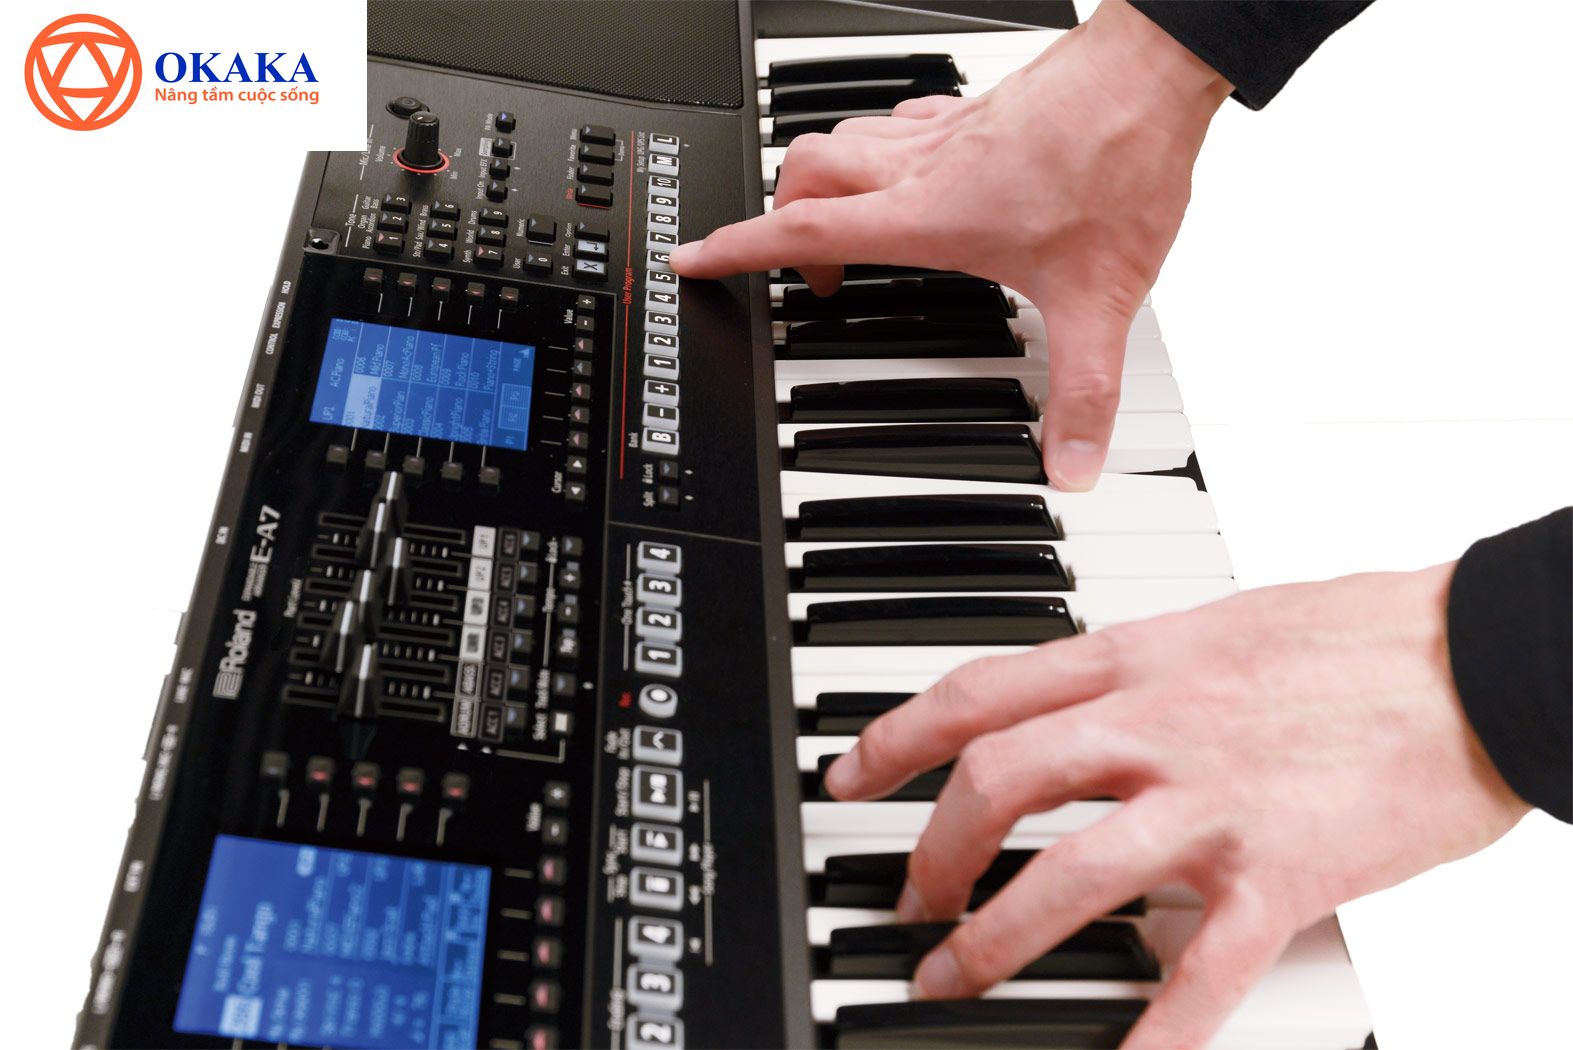 Đàn Organ Roland E-A7, model mới nhất của Roland được rất nhiều nhạc công nổi tiếng thế giới đánh giá cao, rất đáng để bạn cân nhắc.